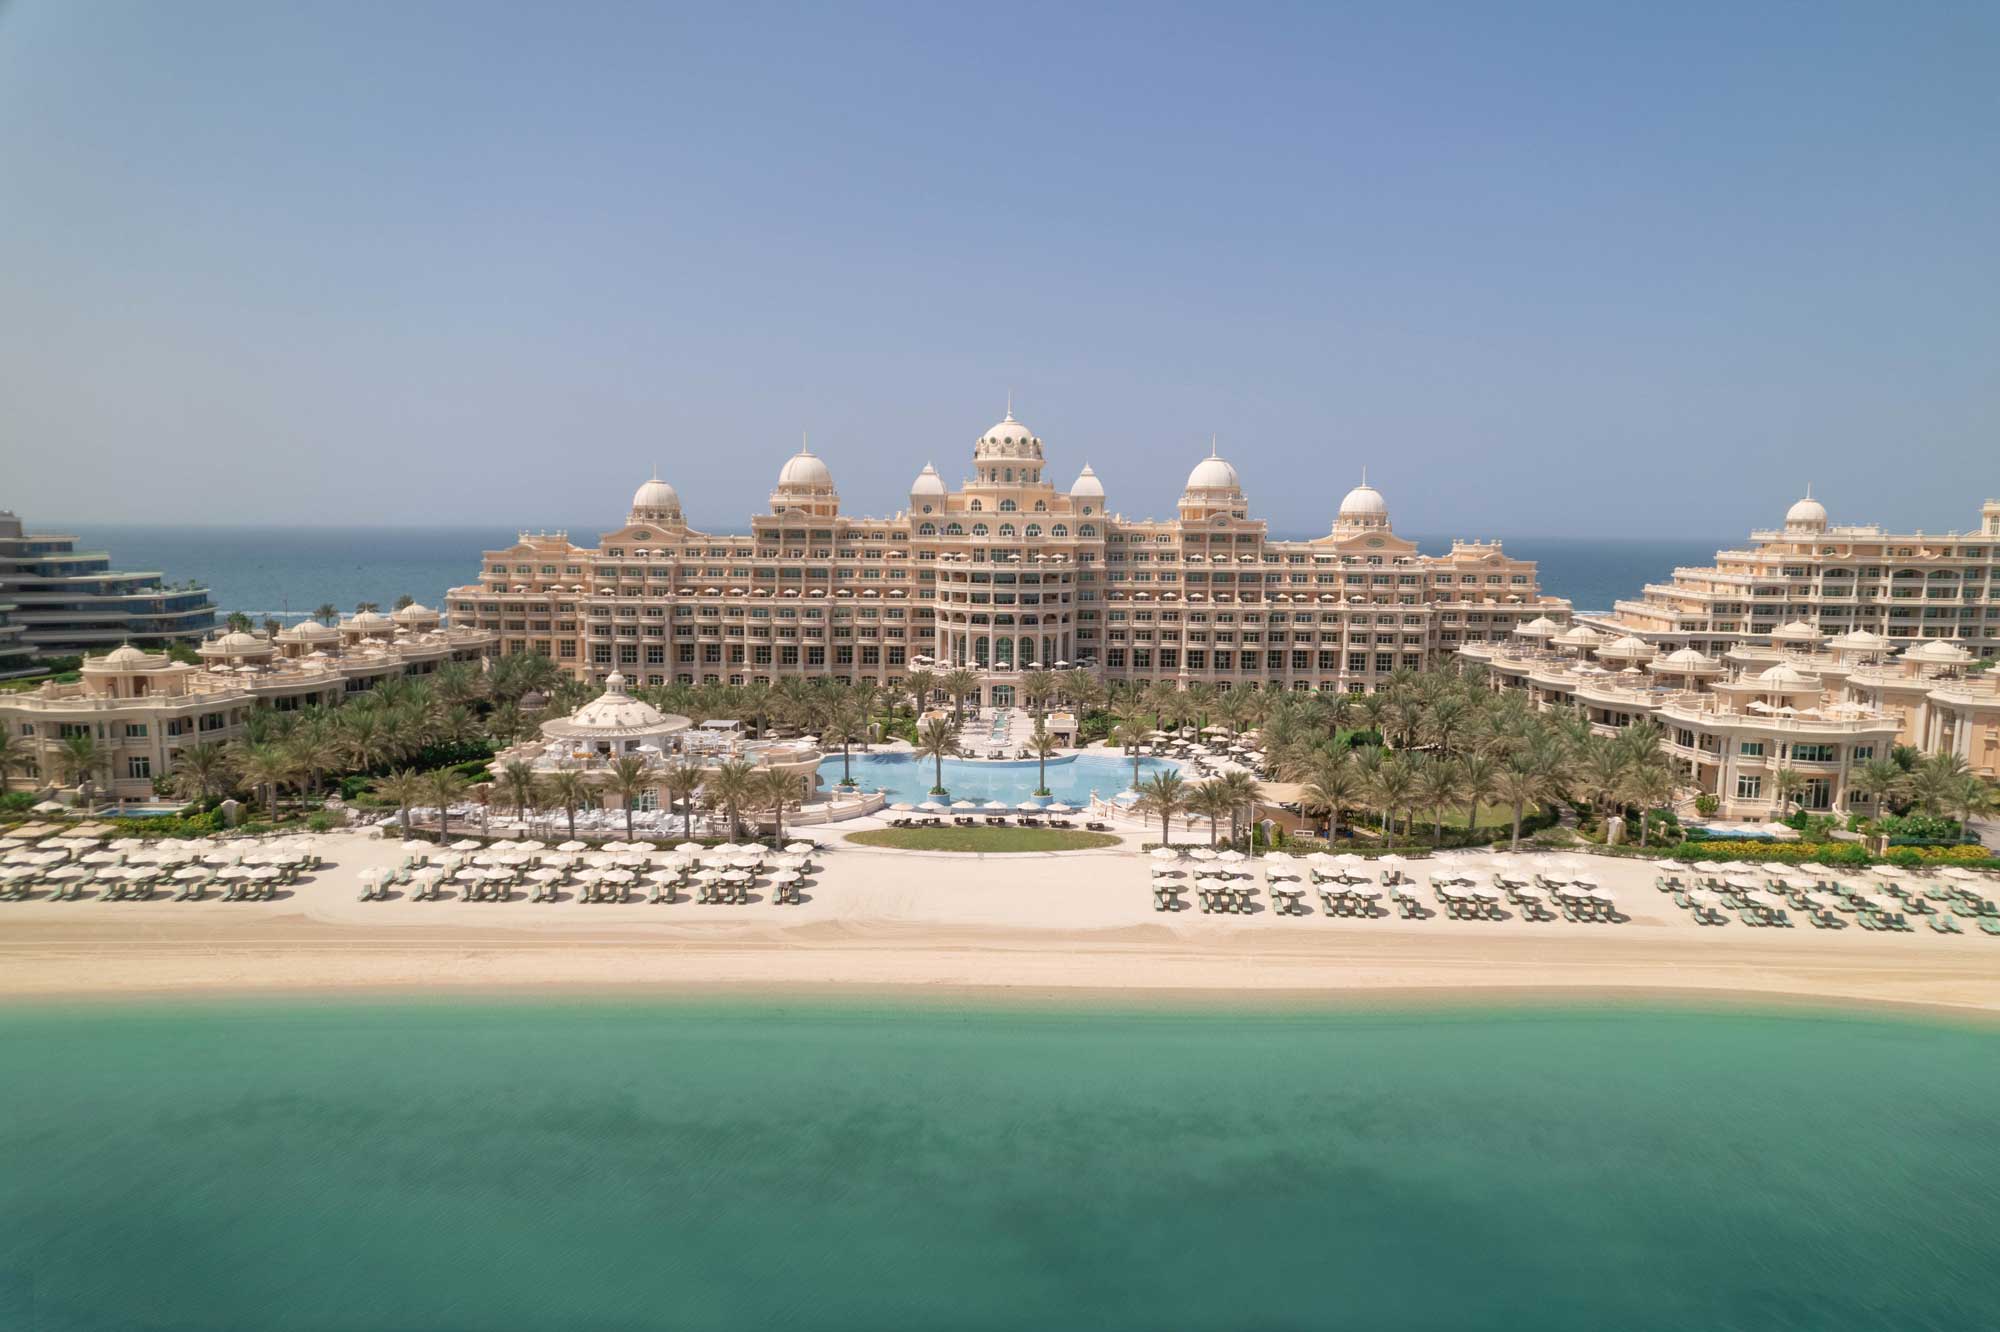 Raffles-The-Palm-Dubai-Hotel-Exterior-View